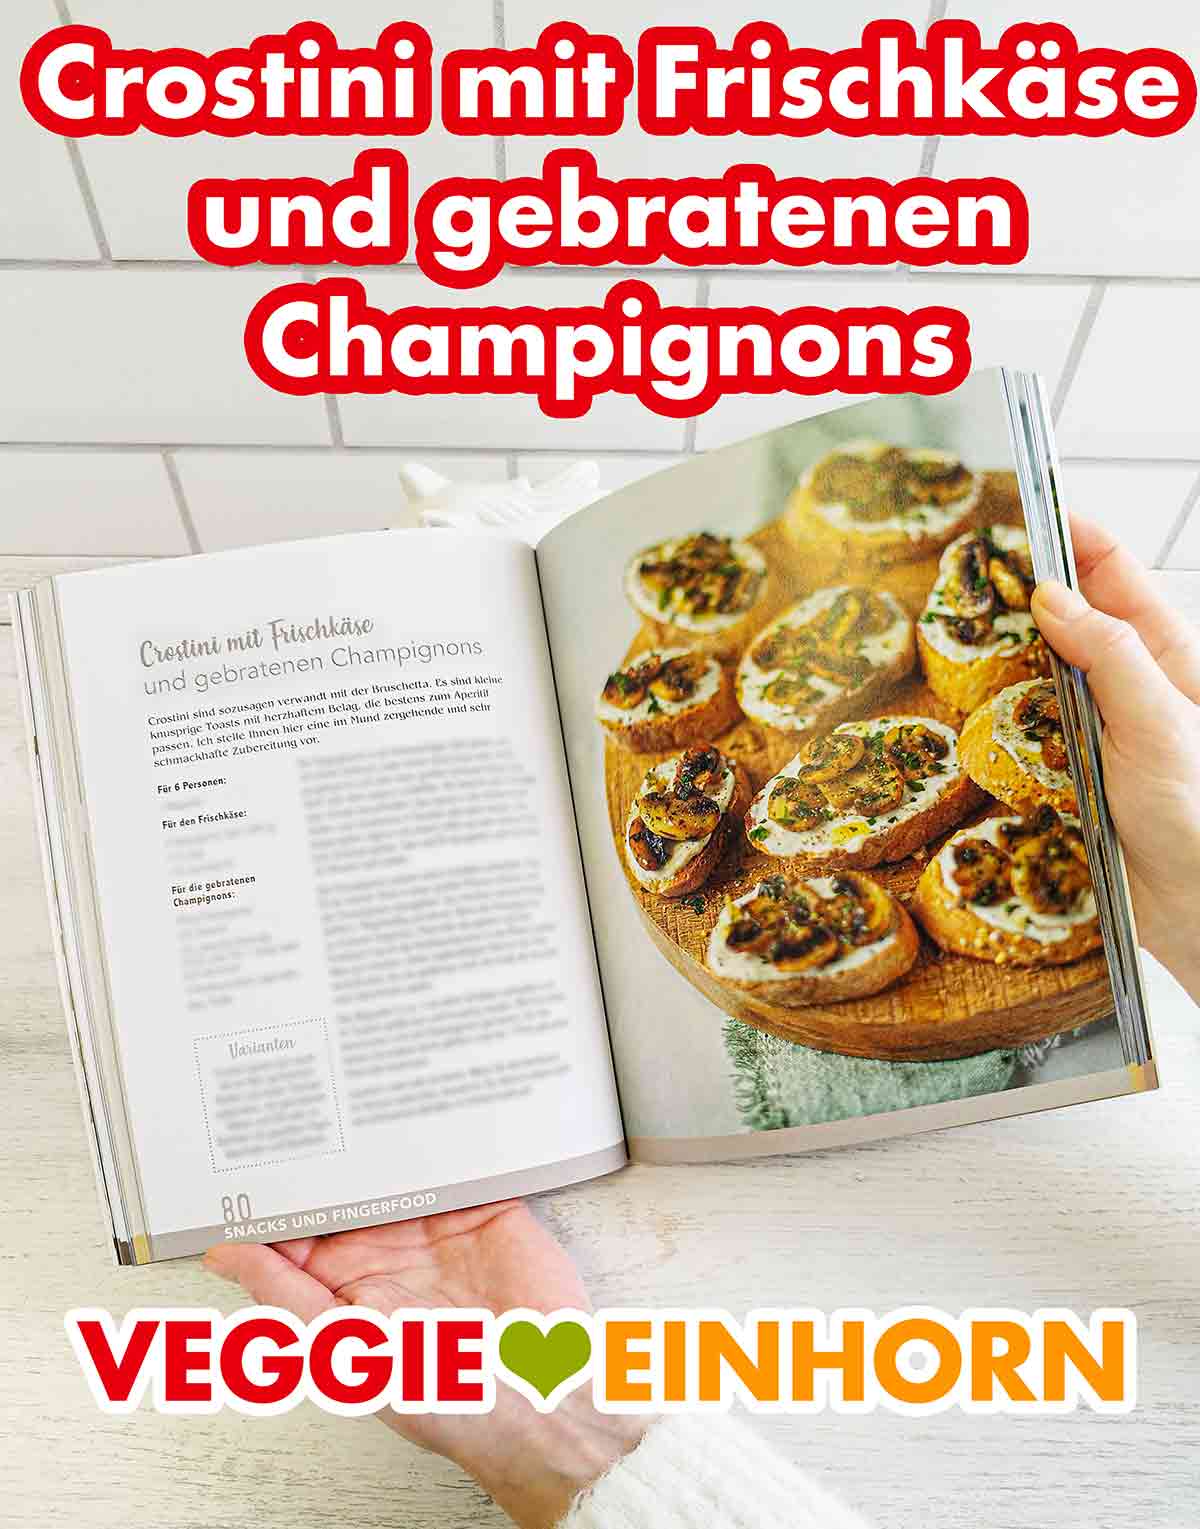 Crostini mit Frischkäse und gebratenen Champignons im Kochbuch Vegan und Günstig von Marie Laforêt